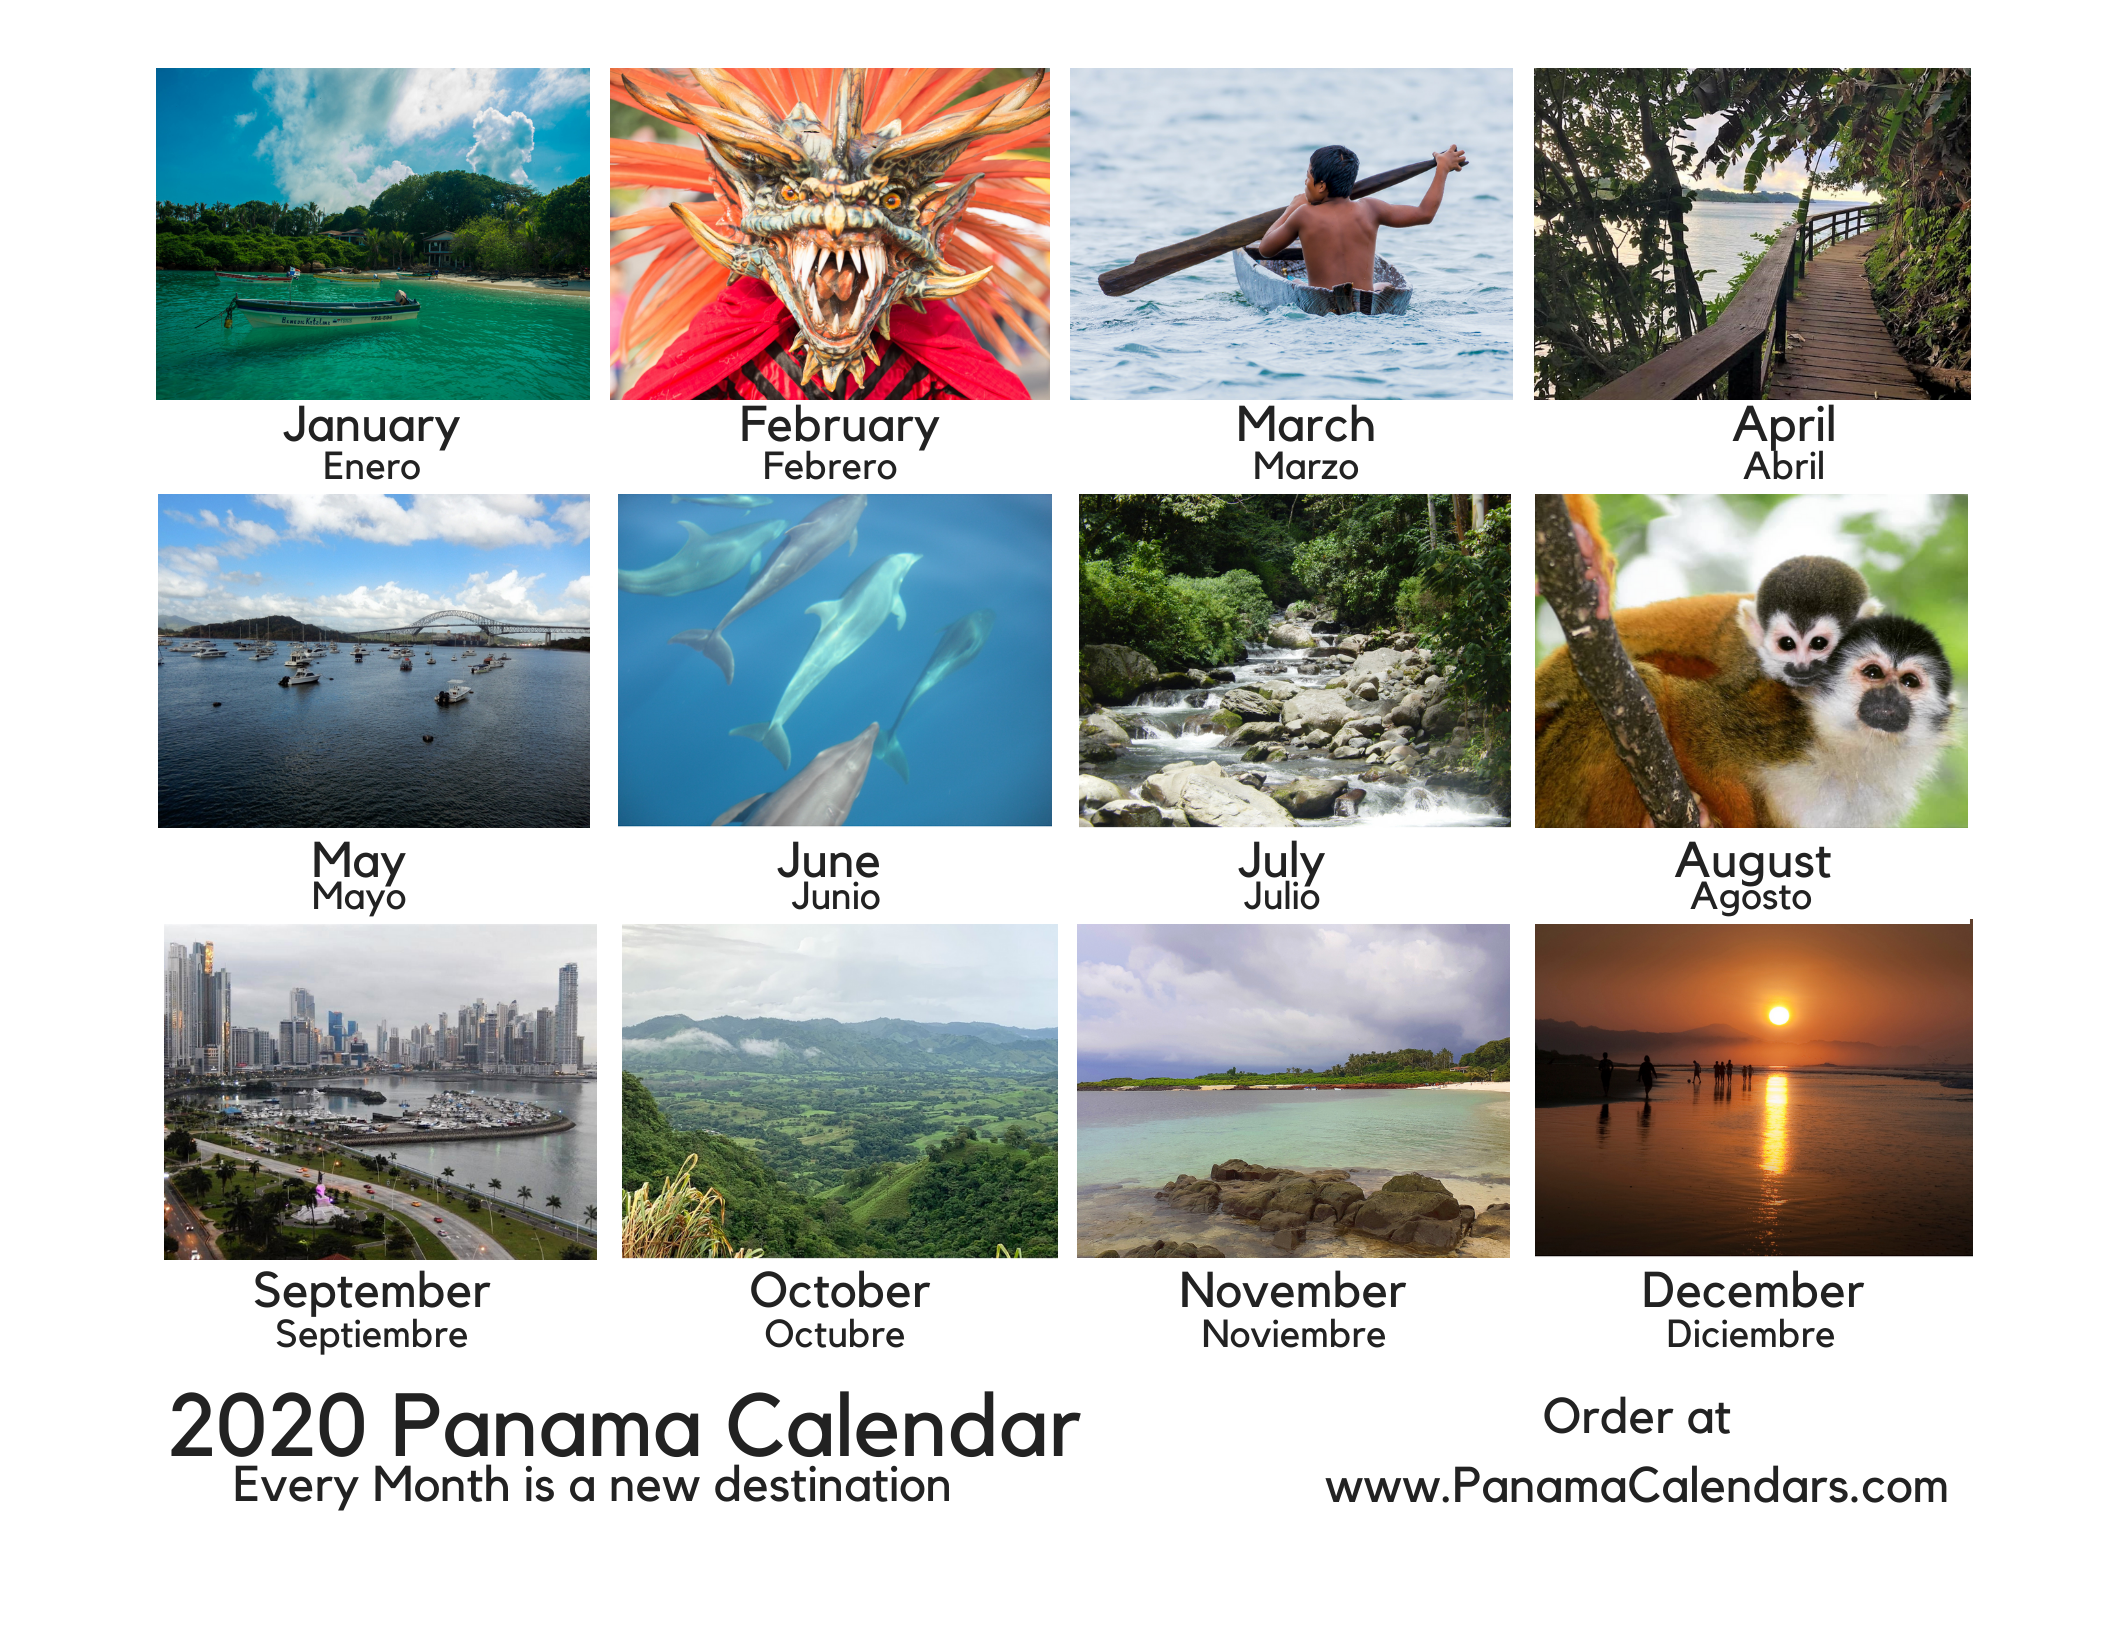 2020 Panama Calendar Panama Calendars